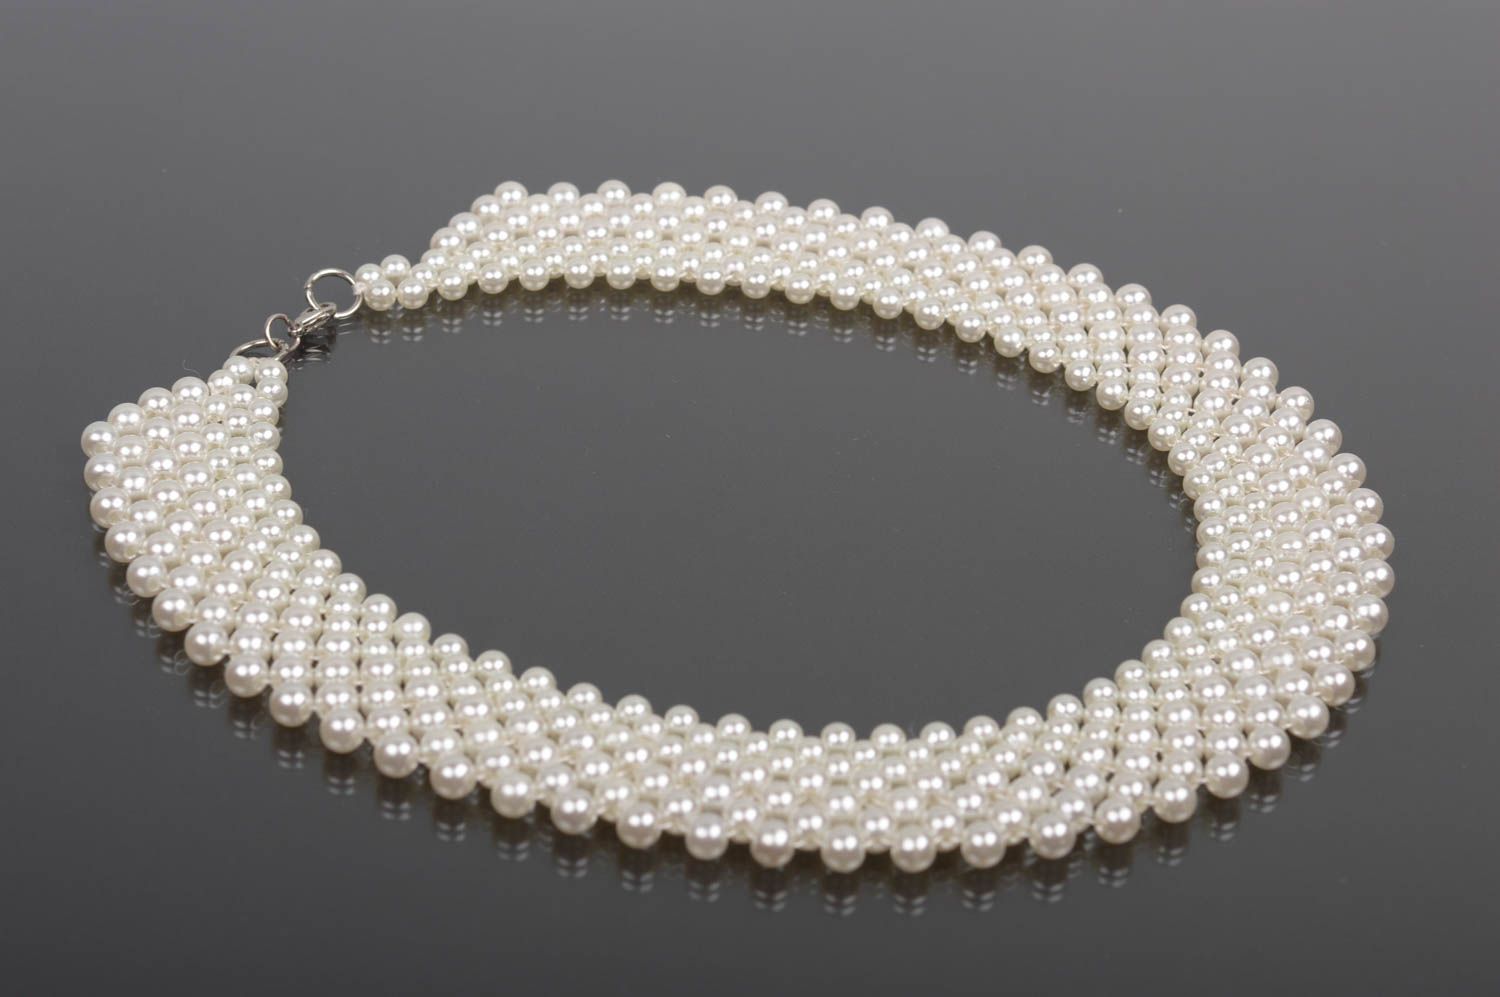 Handmade white beaded necklace designer stylish accessory unusual necklace photo 4